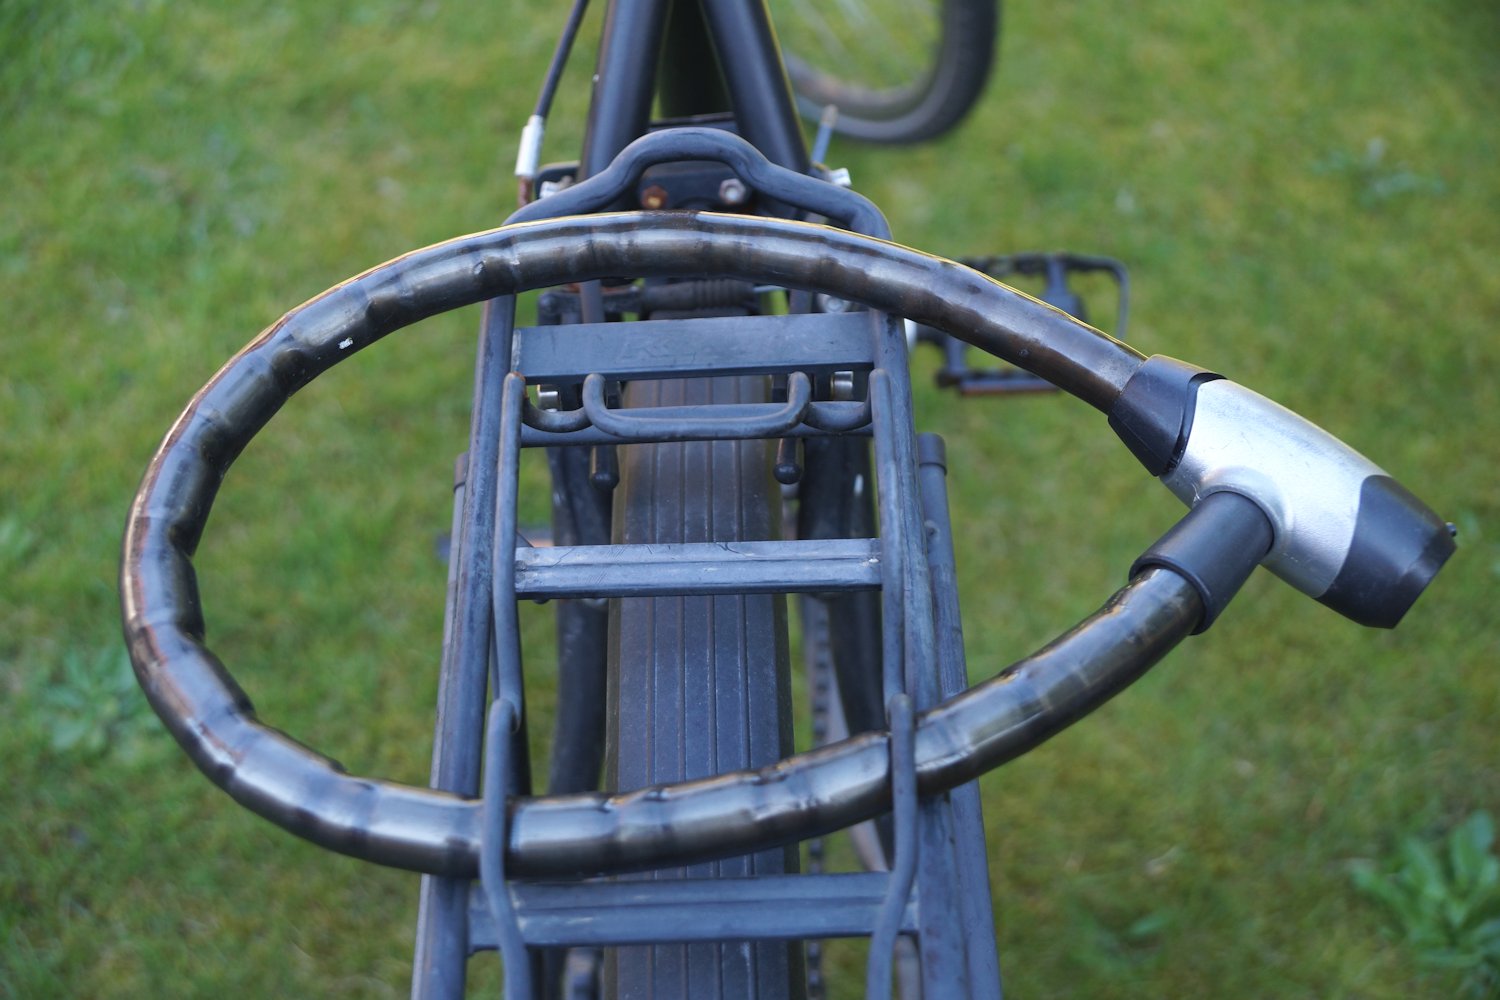 Fahrradschloss Test - Schloss am Fahrrad auf dem Kepäckträger